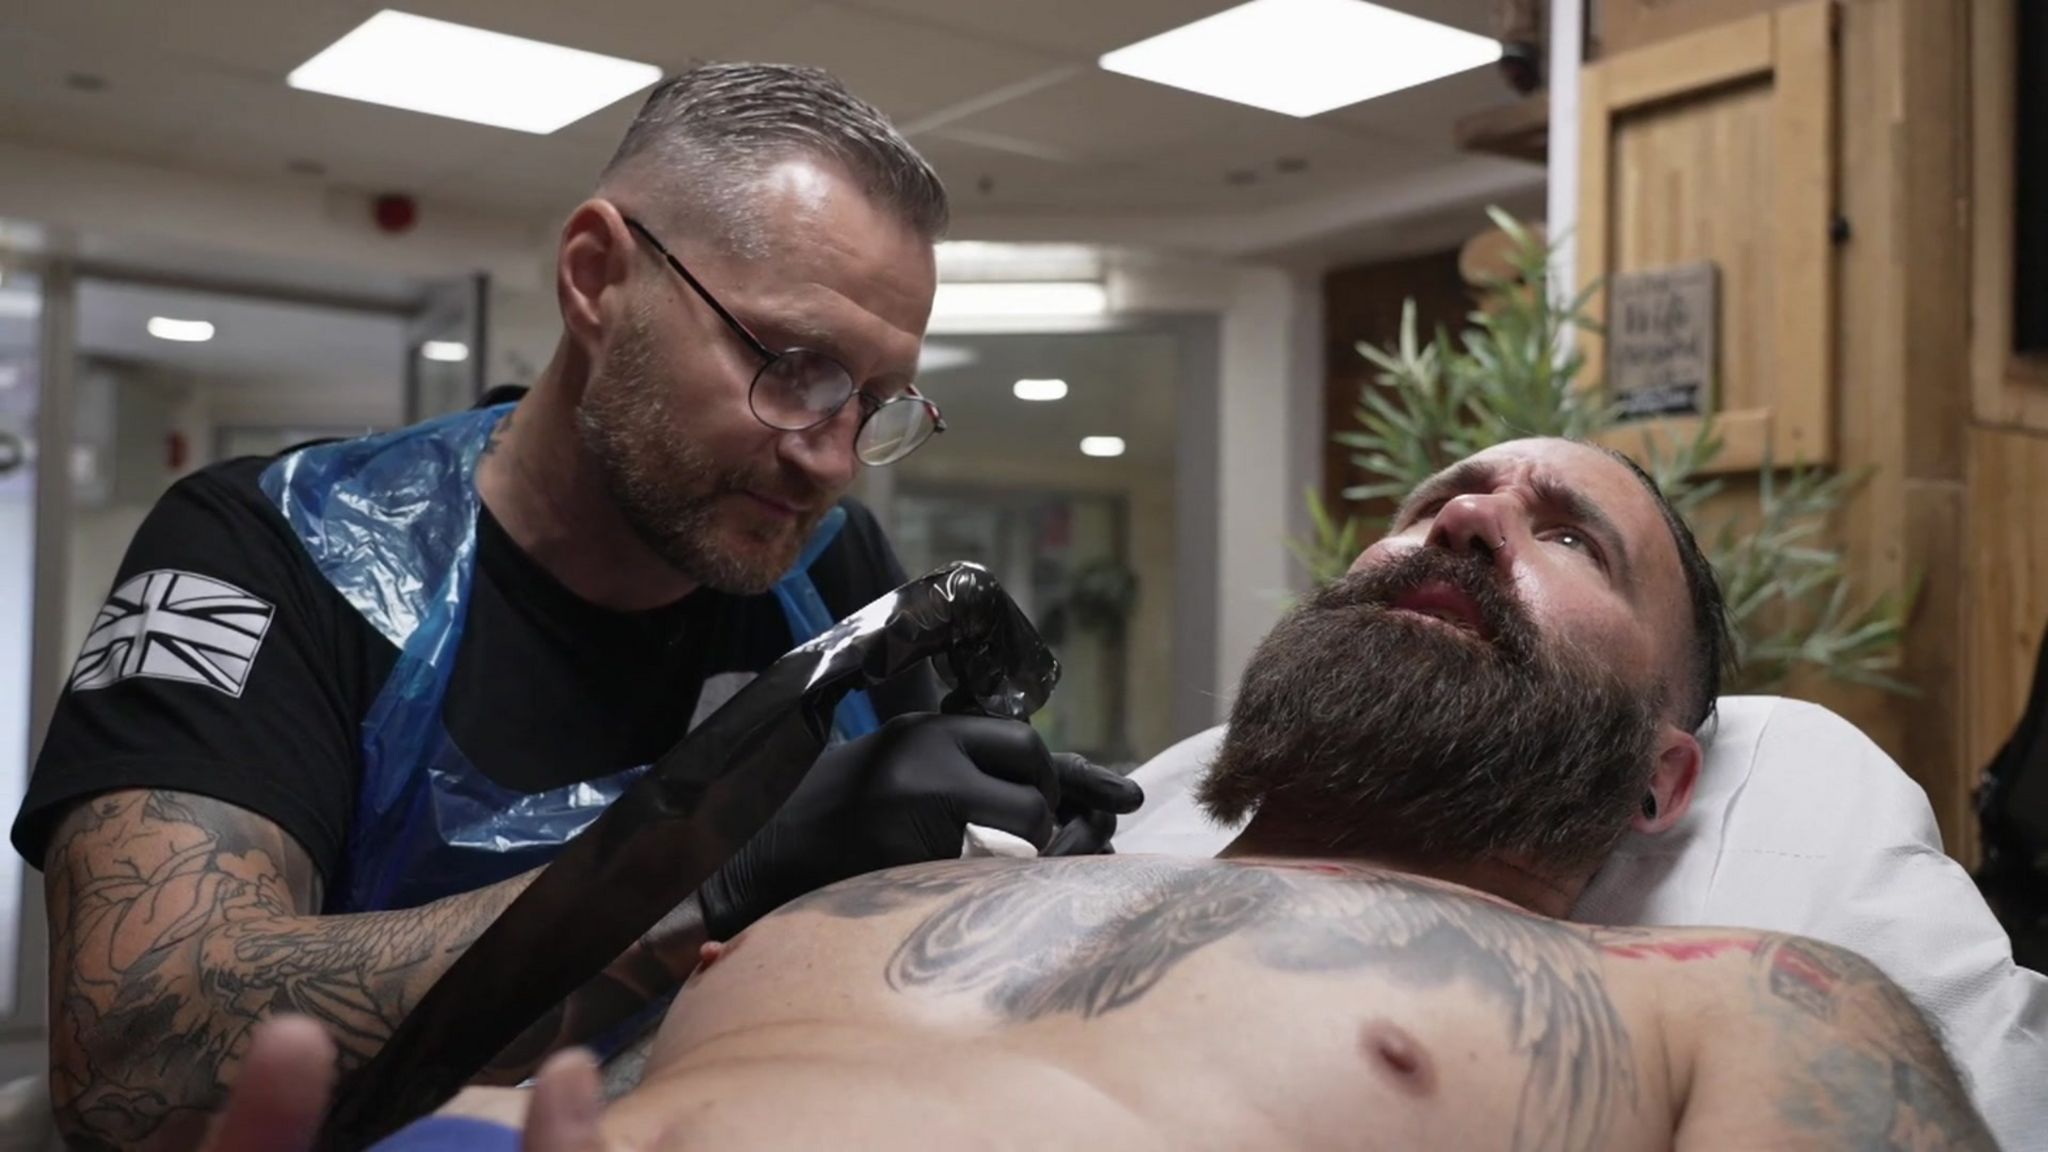 Aaron Baillie tattooing Scott Lovegrove